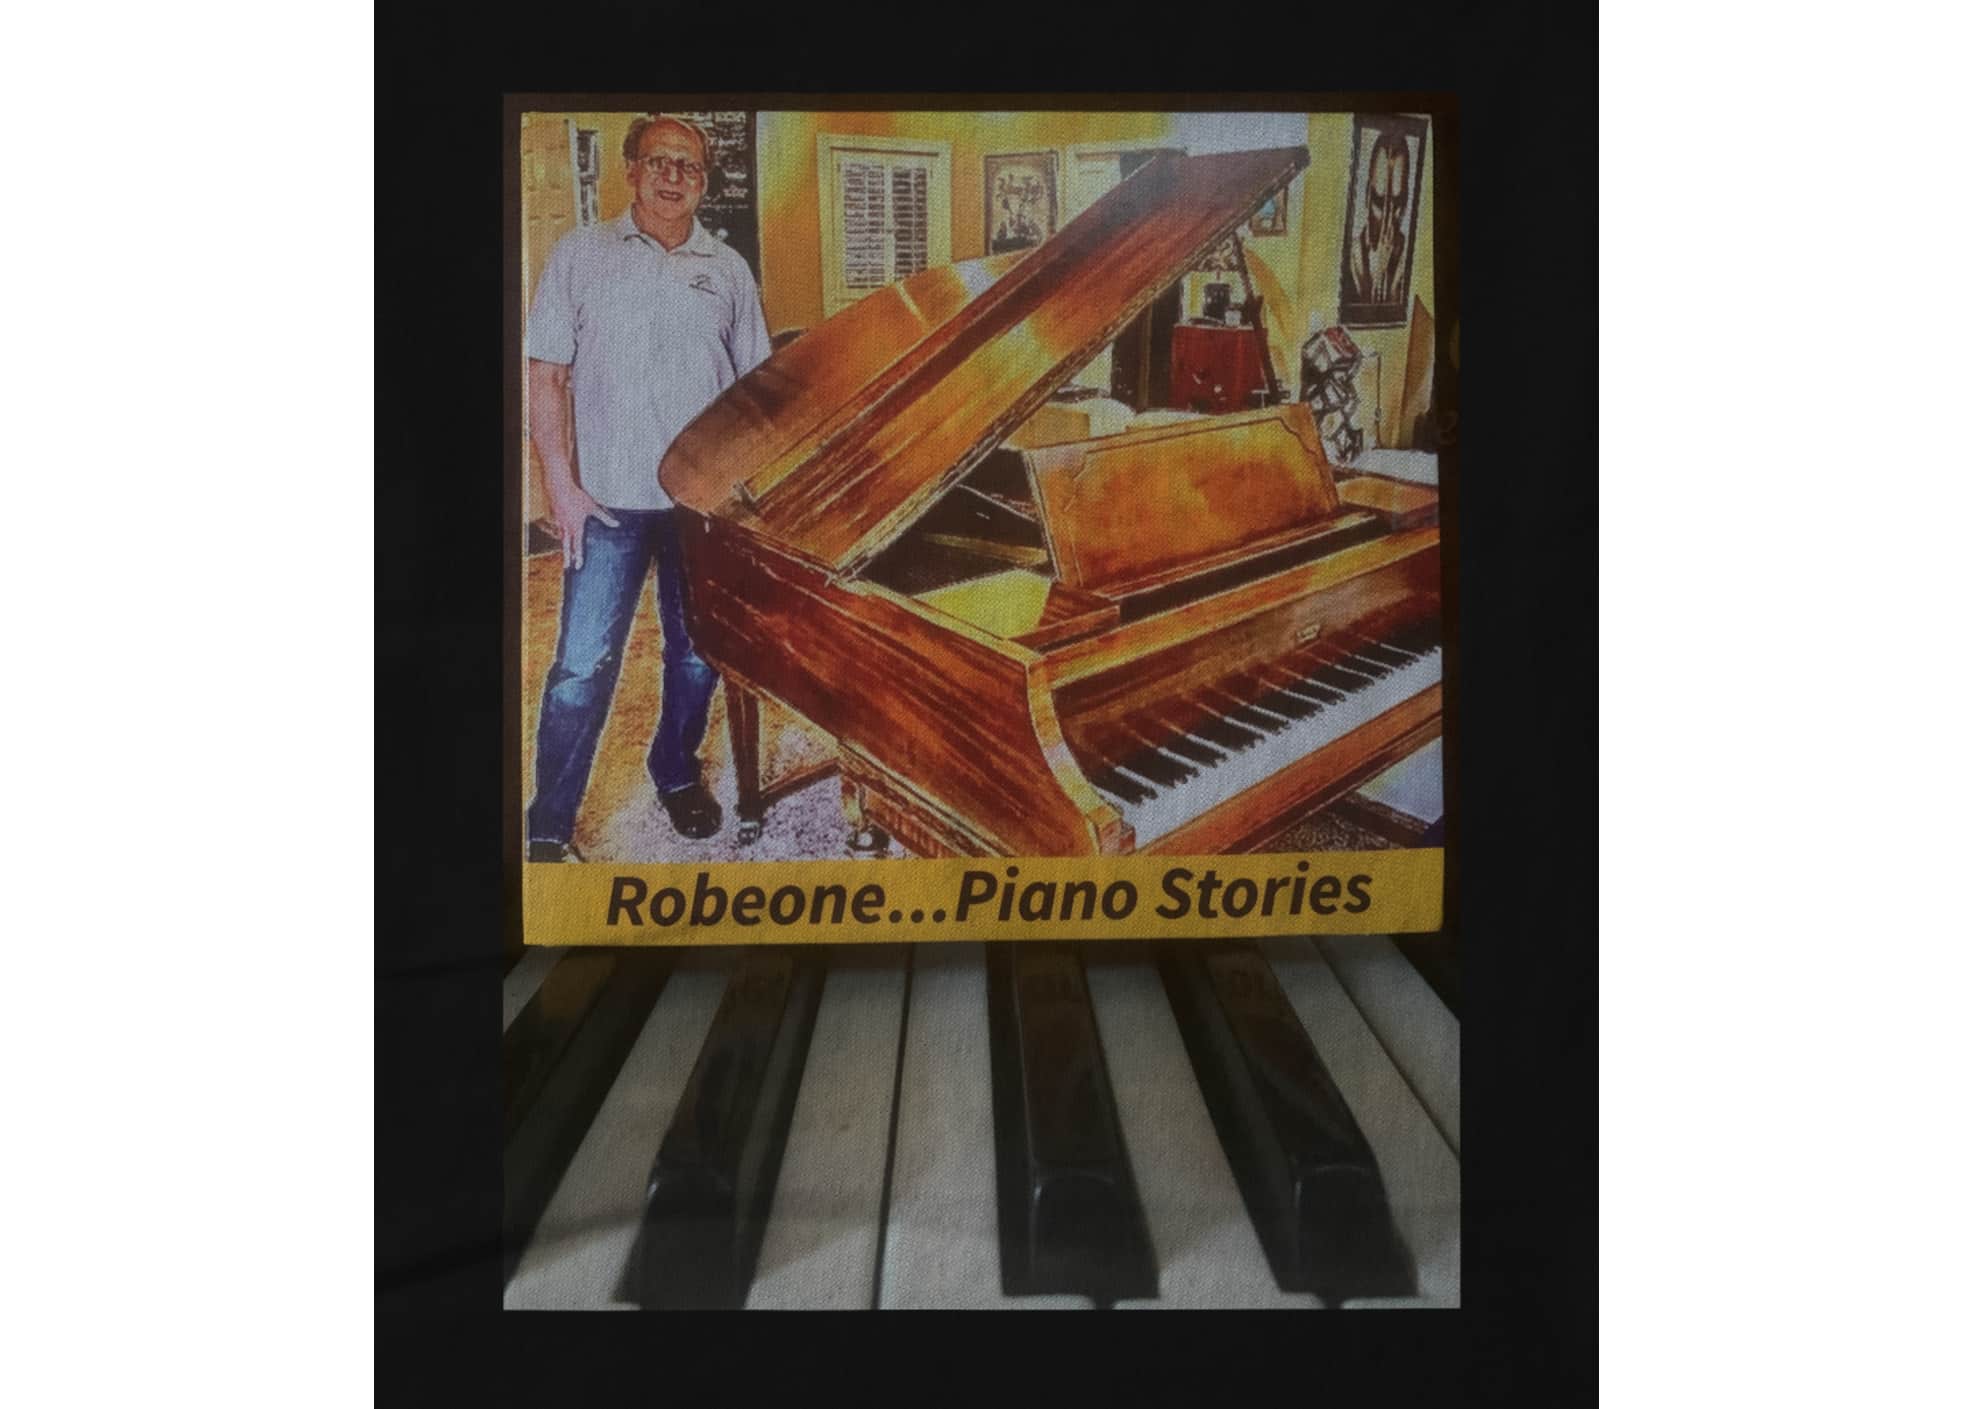 Robert schindler piano stories 1616795466